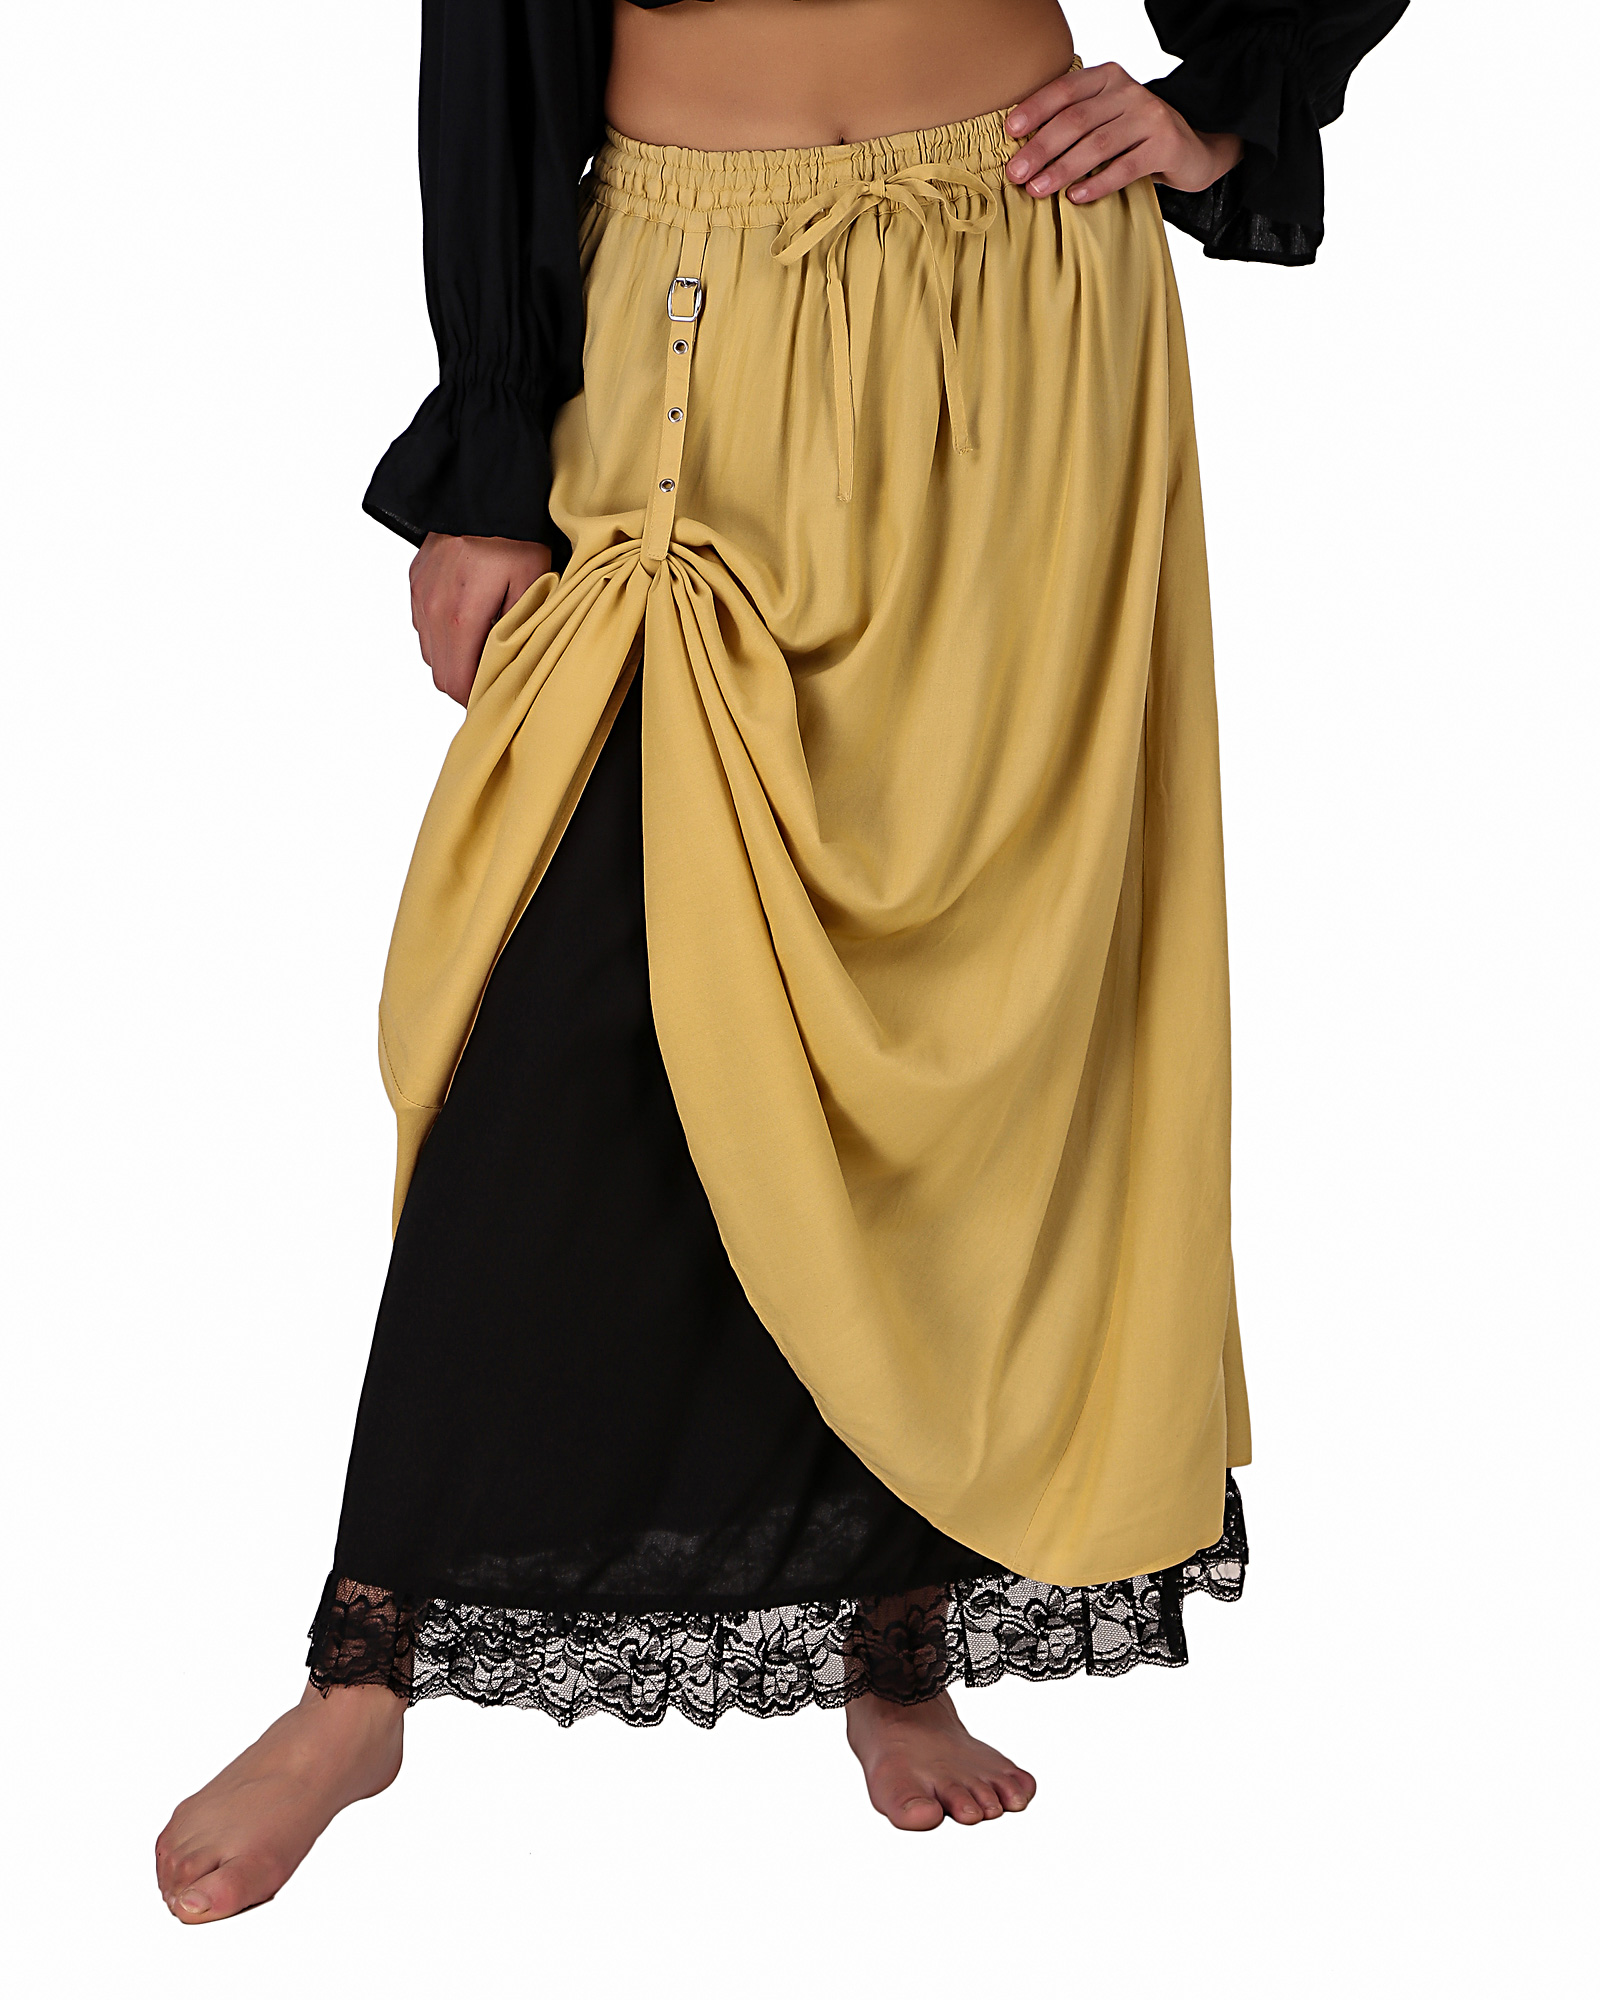 Double-Layer Renaissance LARP Skirt